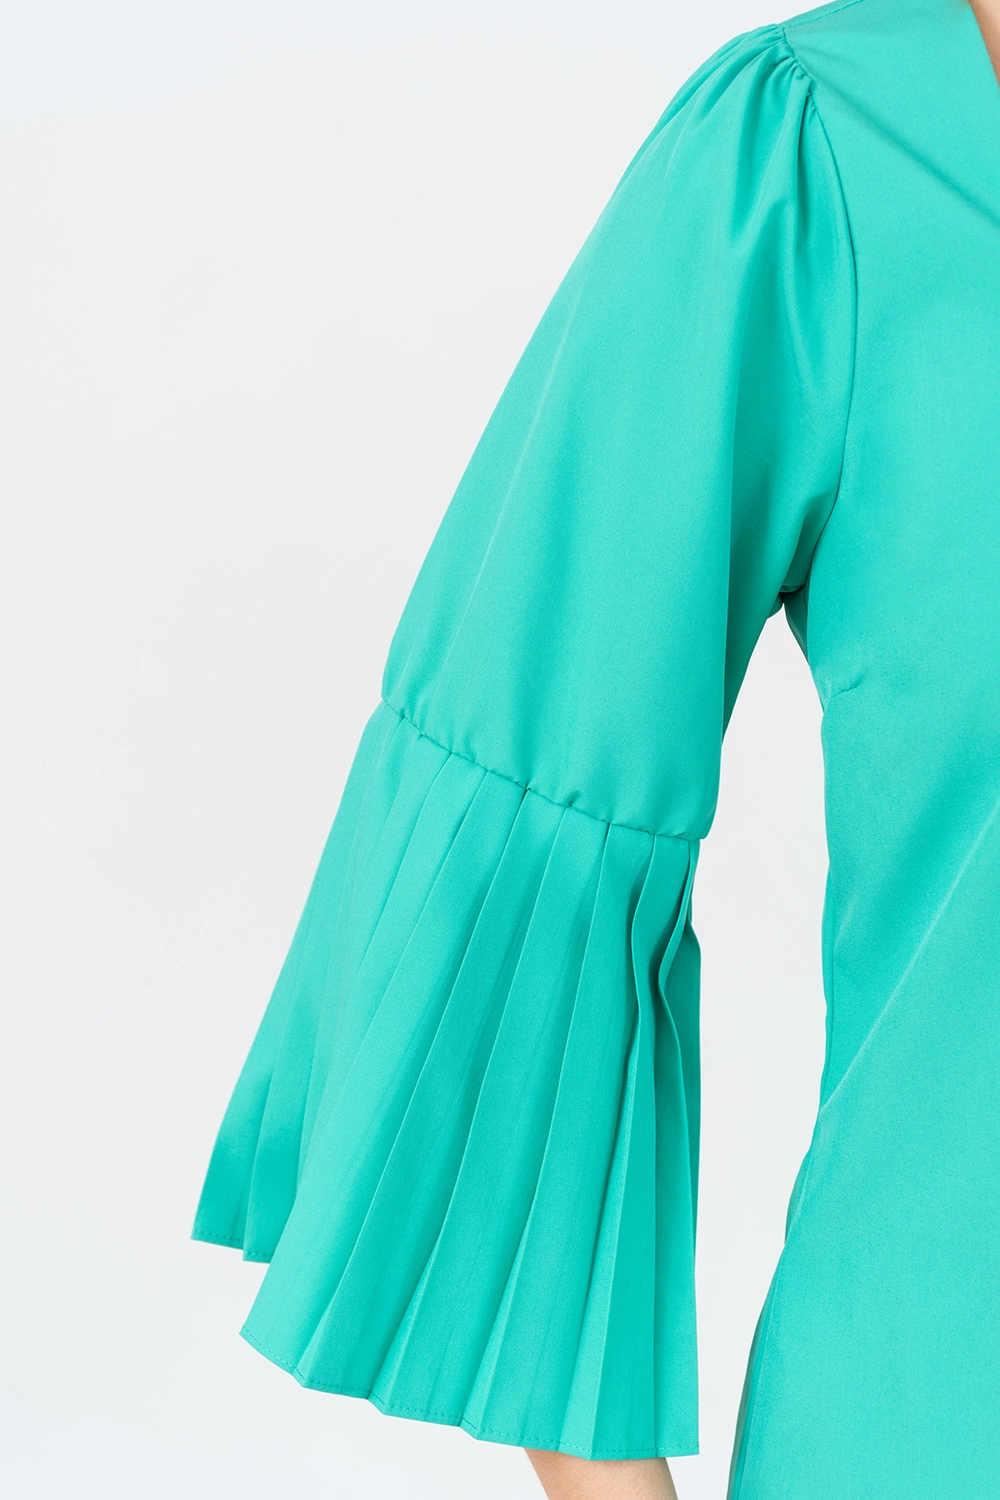 Blusa maga 3/4 plisada escote cuadrado. Verde esmeralda talla 10